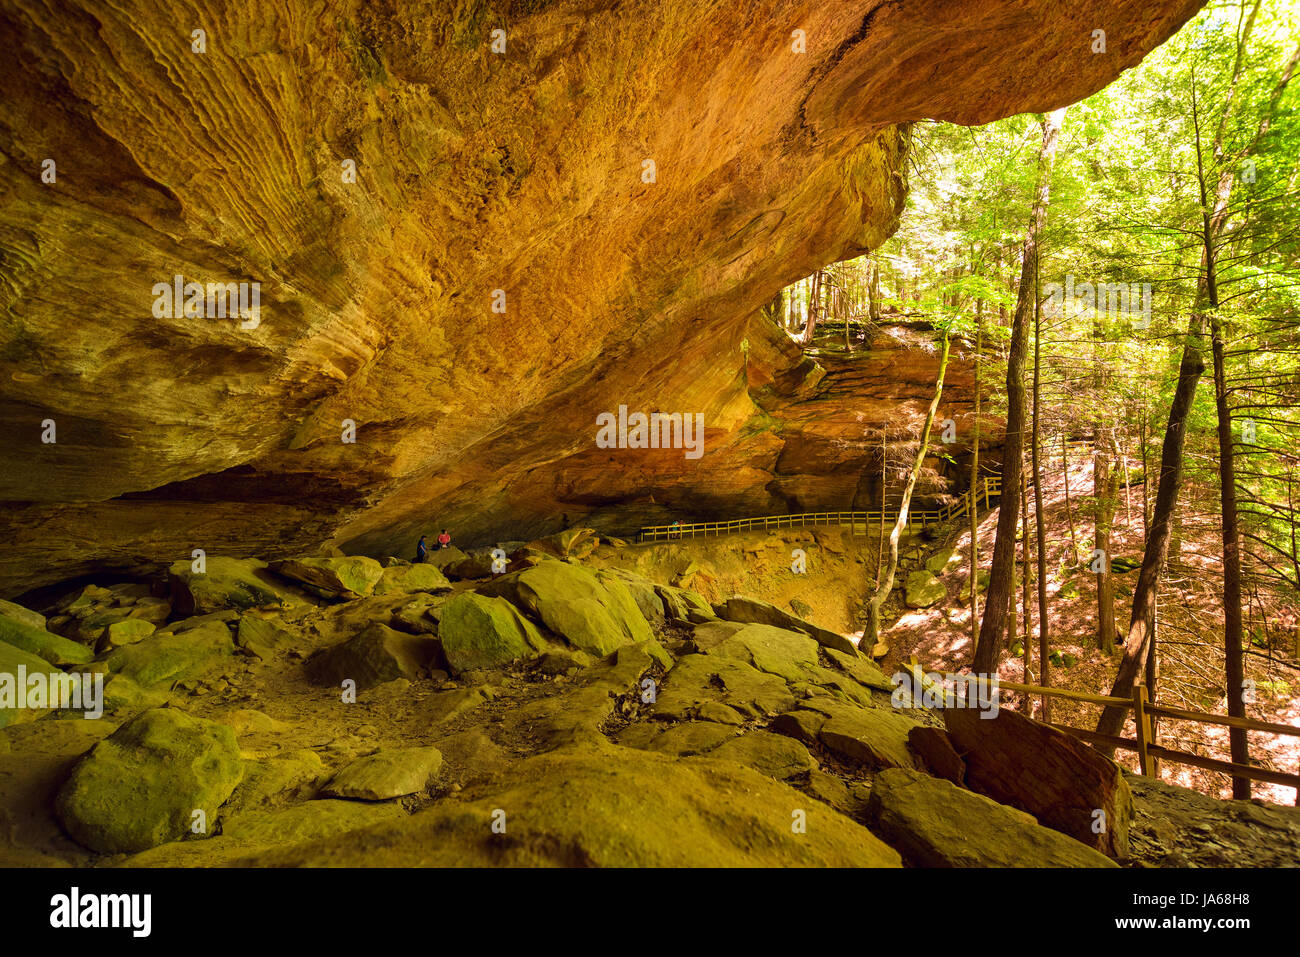 Whispering Cave in Ohio's Parc d'État de Hocking Hills est un exemple remarquable d'un renfoncement cave Banque D'Images